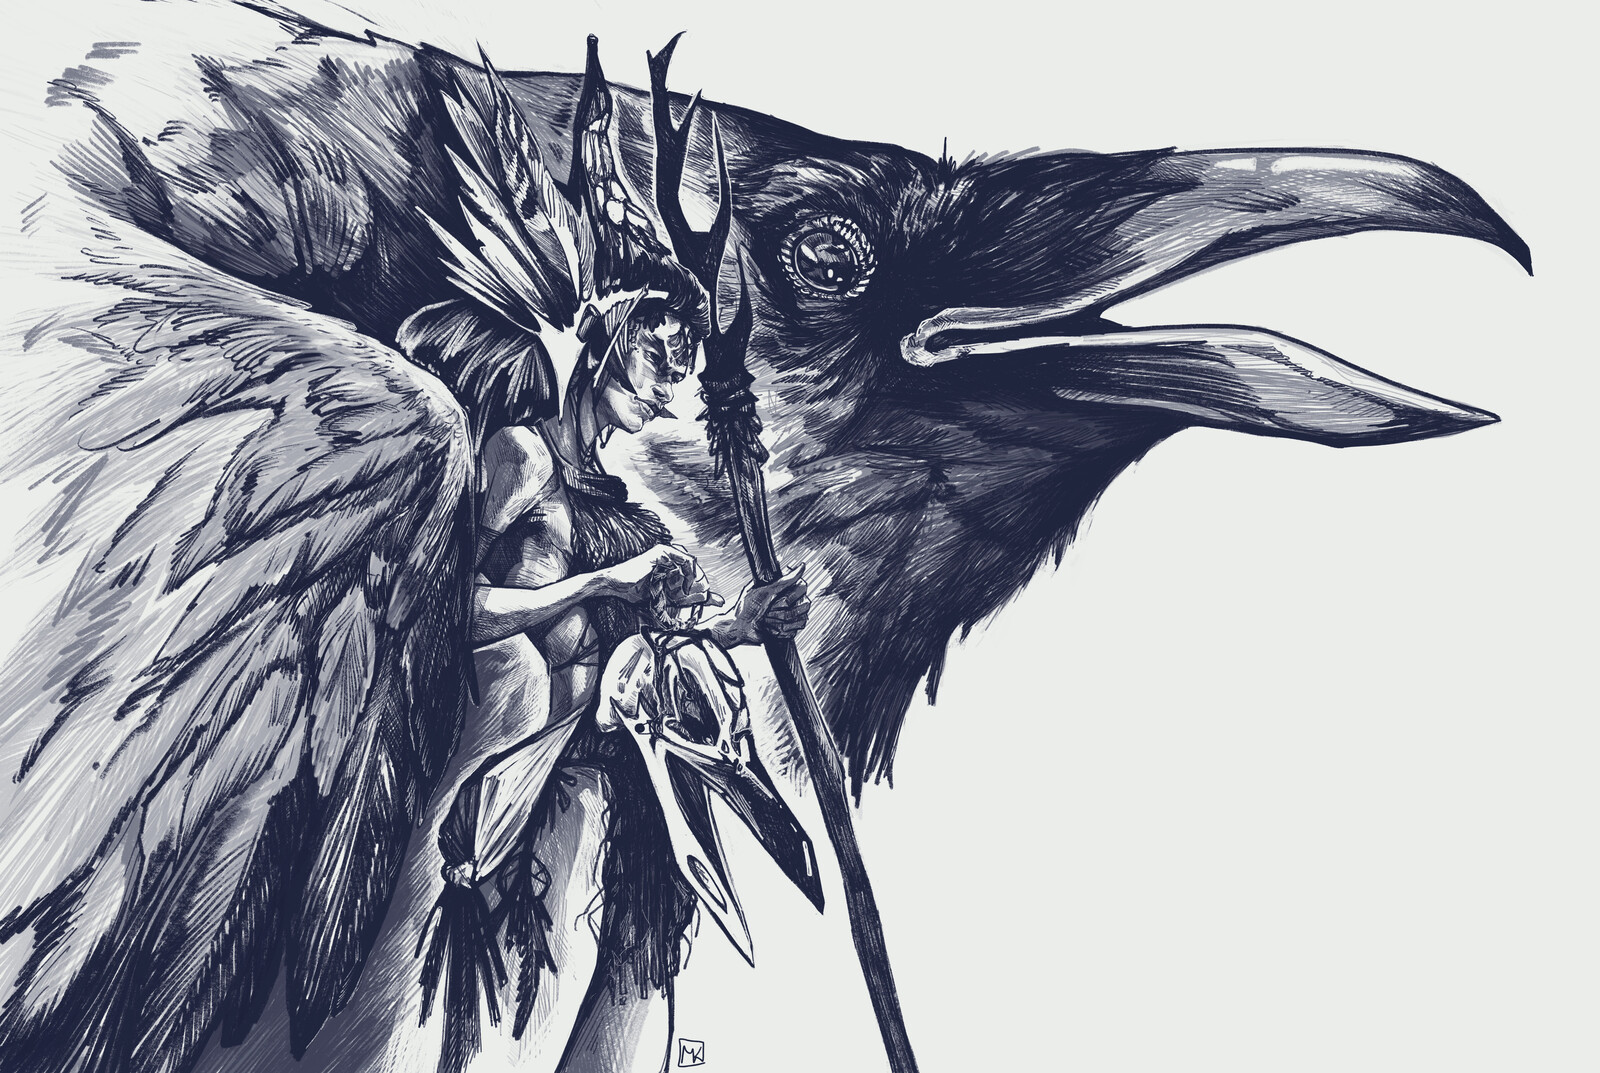 Sister of twelve ravens